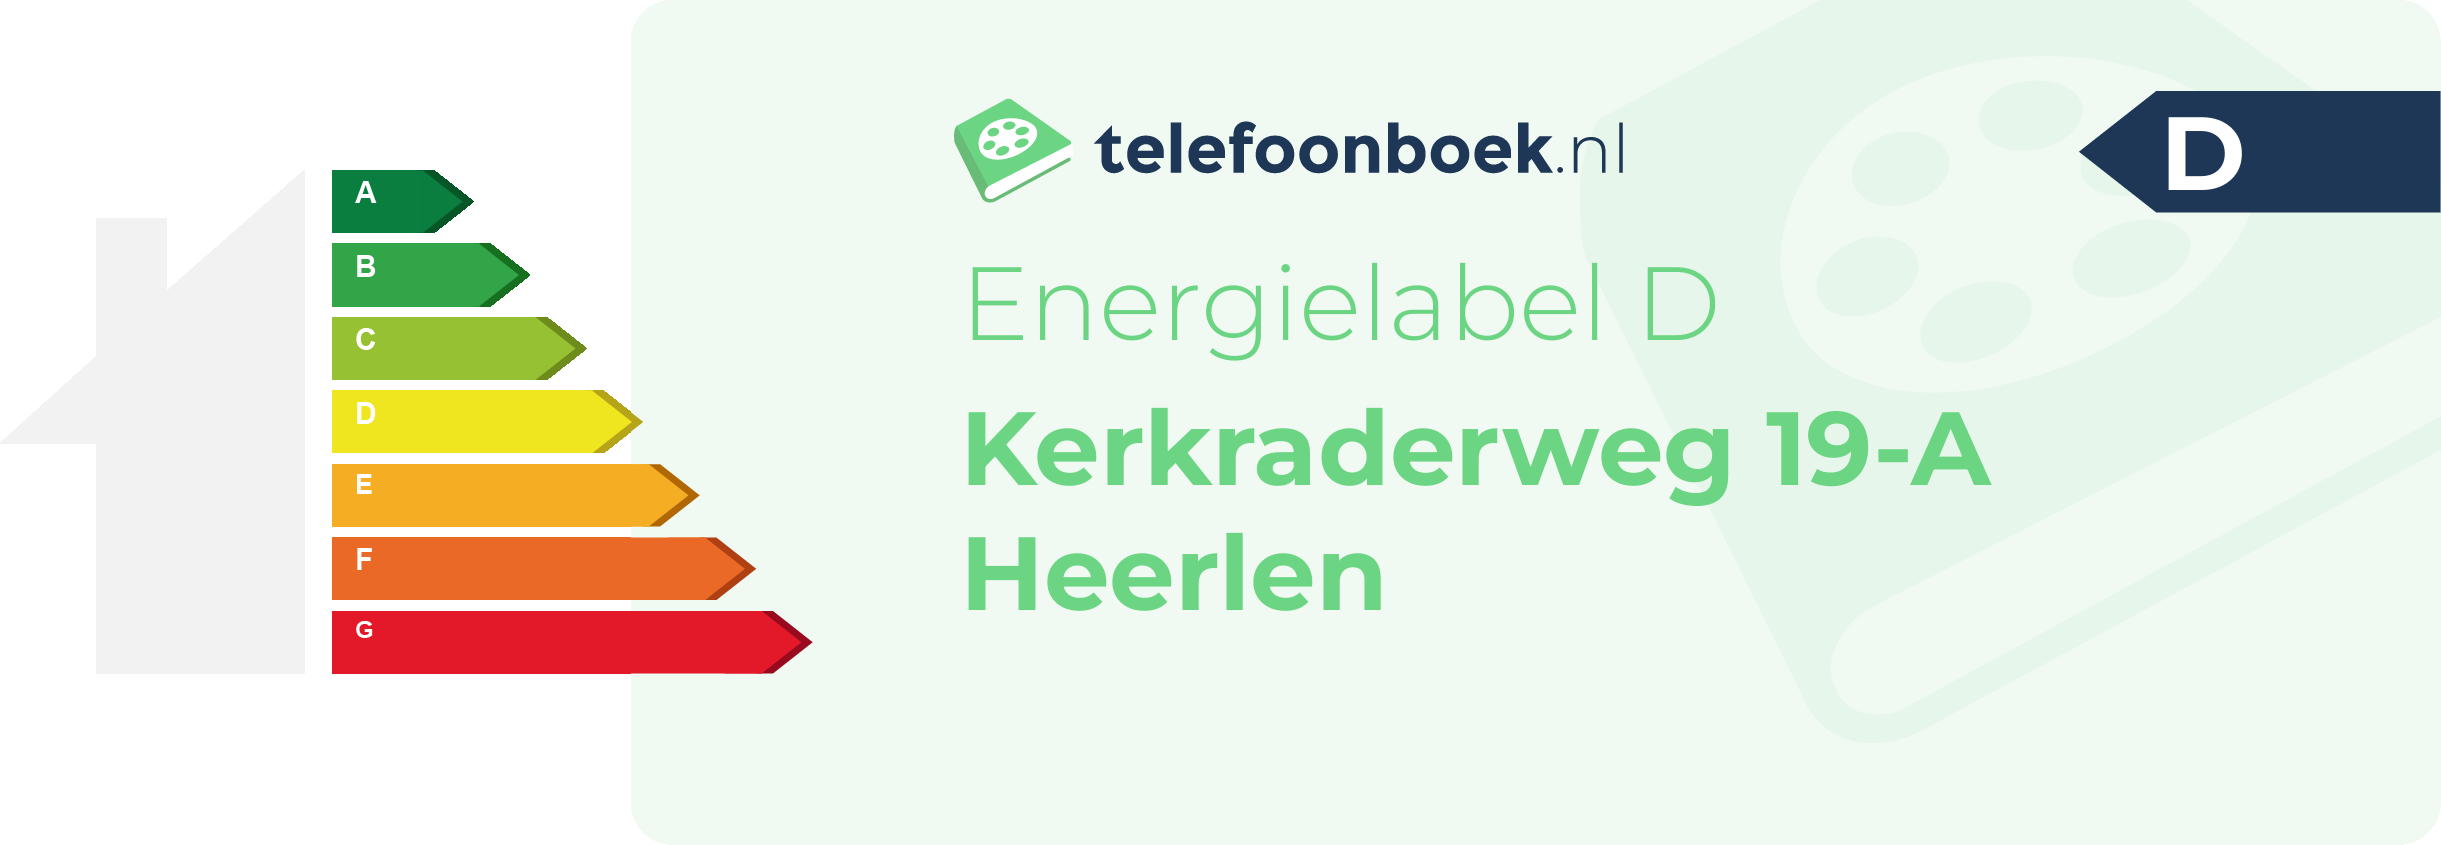 Energielabel Kerkraderweg 19-A Heerlen